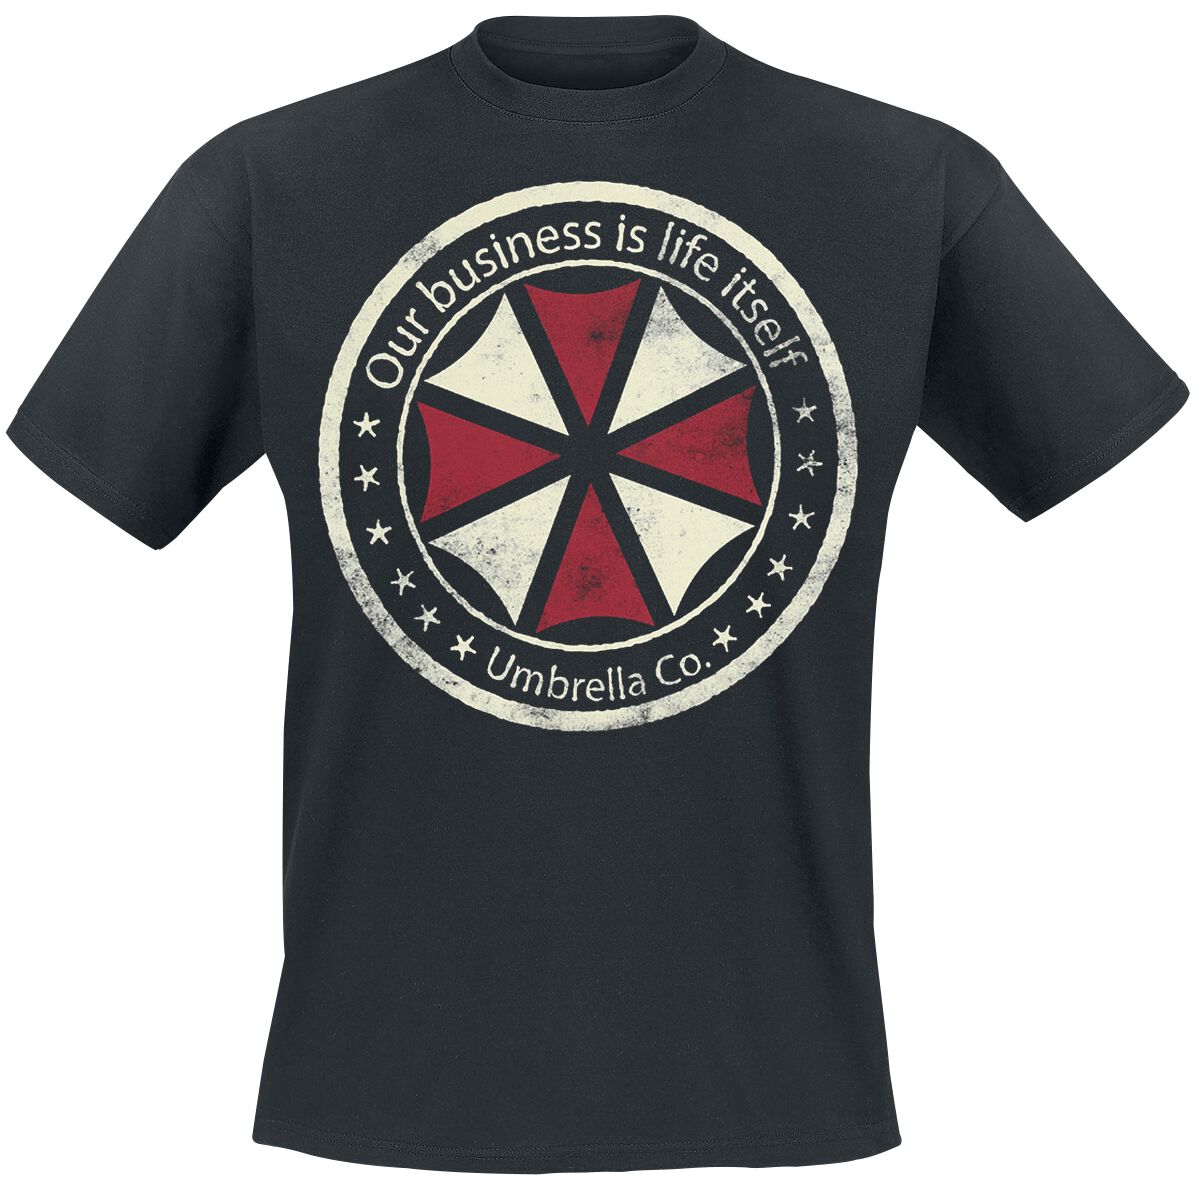 Resident Evil - Gaming T-Shirt - Umbrella Co. - Our Business Is Life Itself - S bis XXL - für Männer - Größe S - schwarz